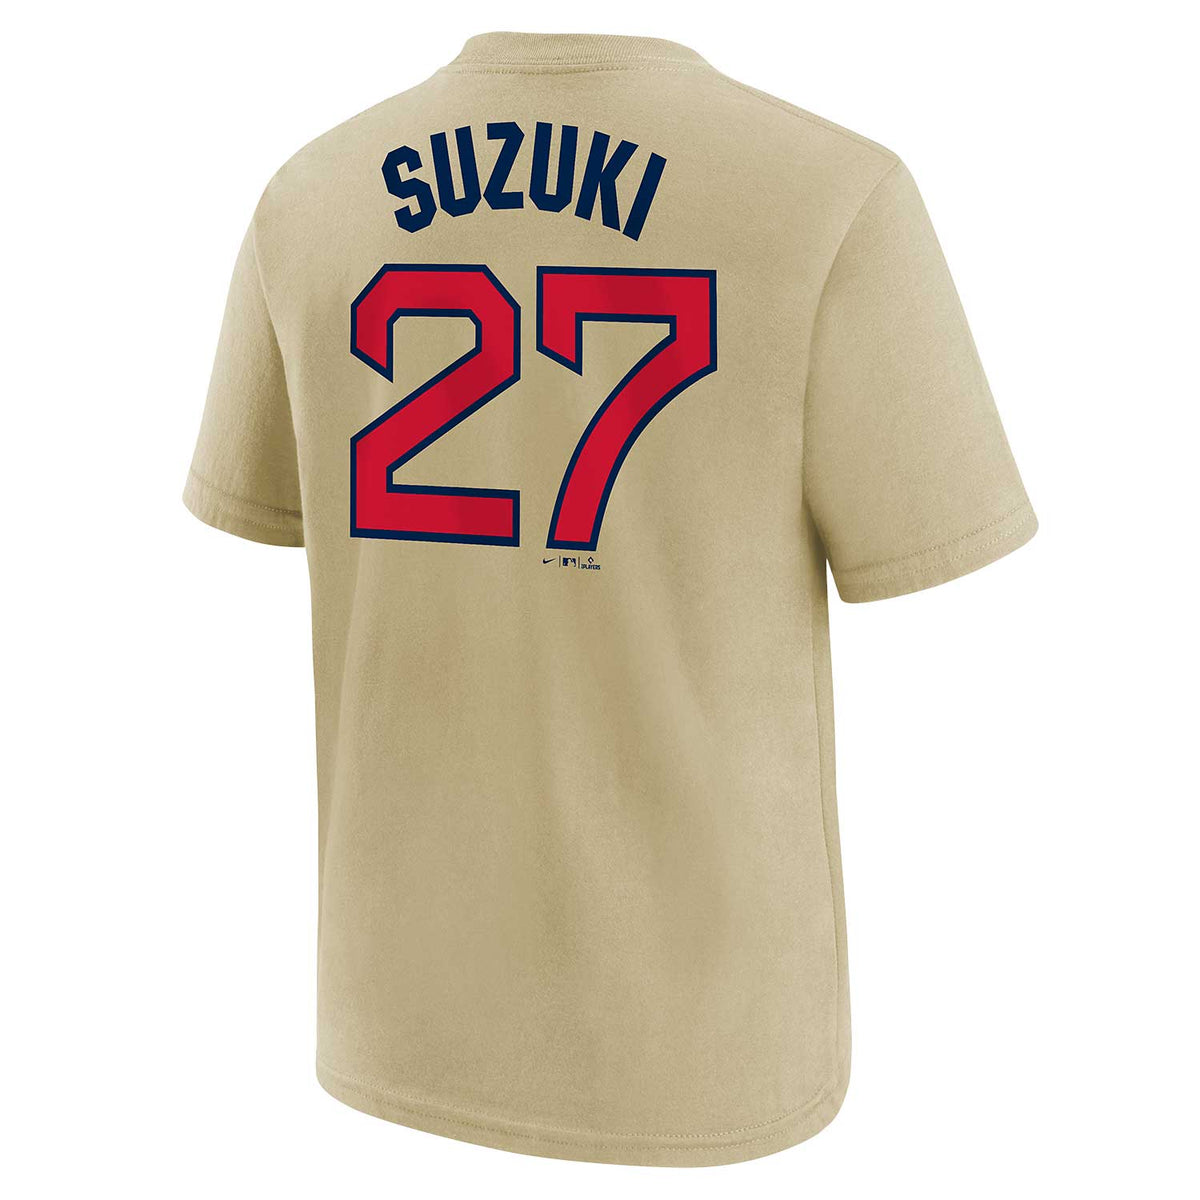 Chicago Cubs Seiya Suzuki seiya Later T-shirt 